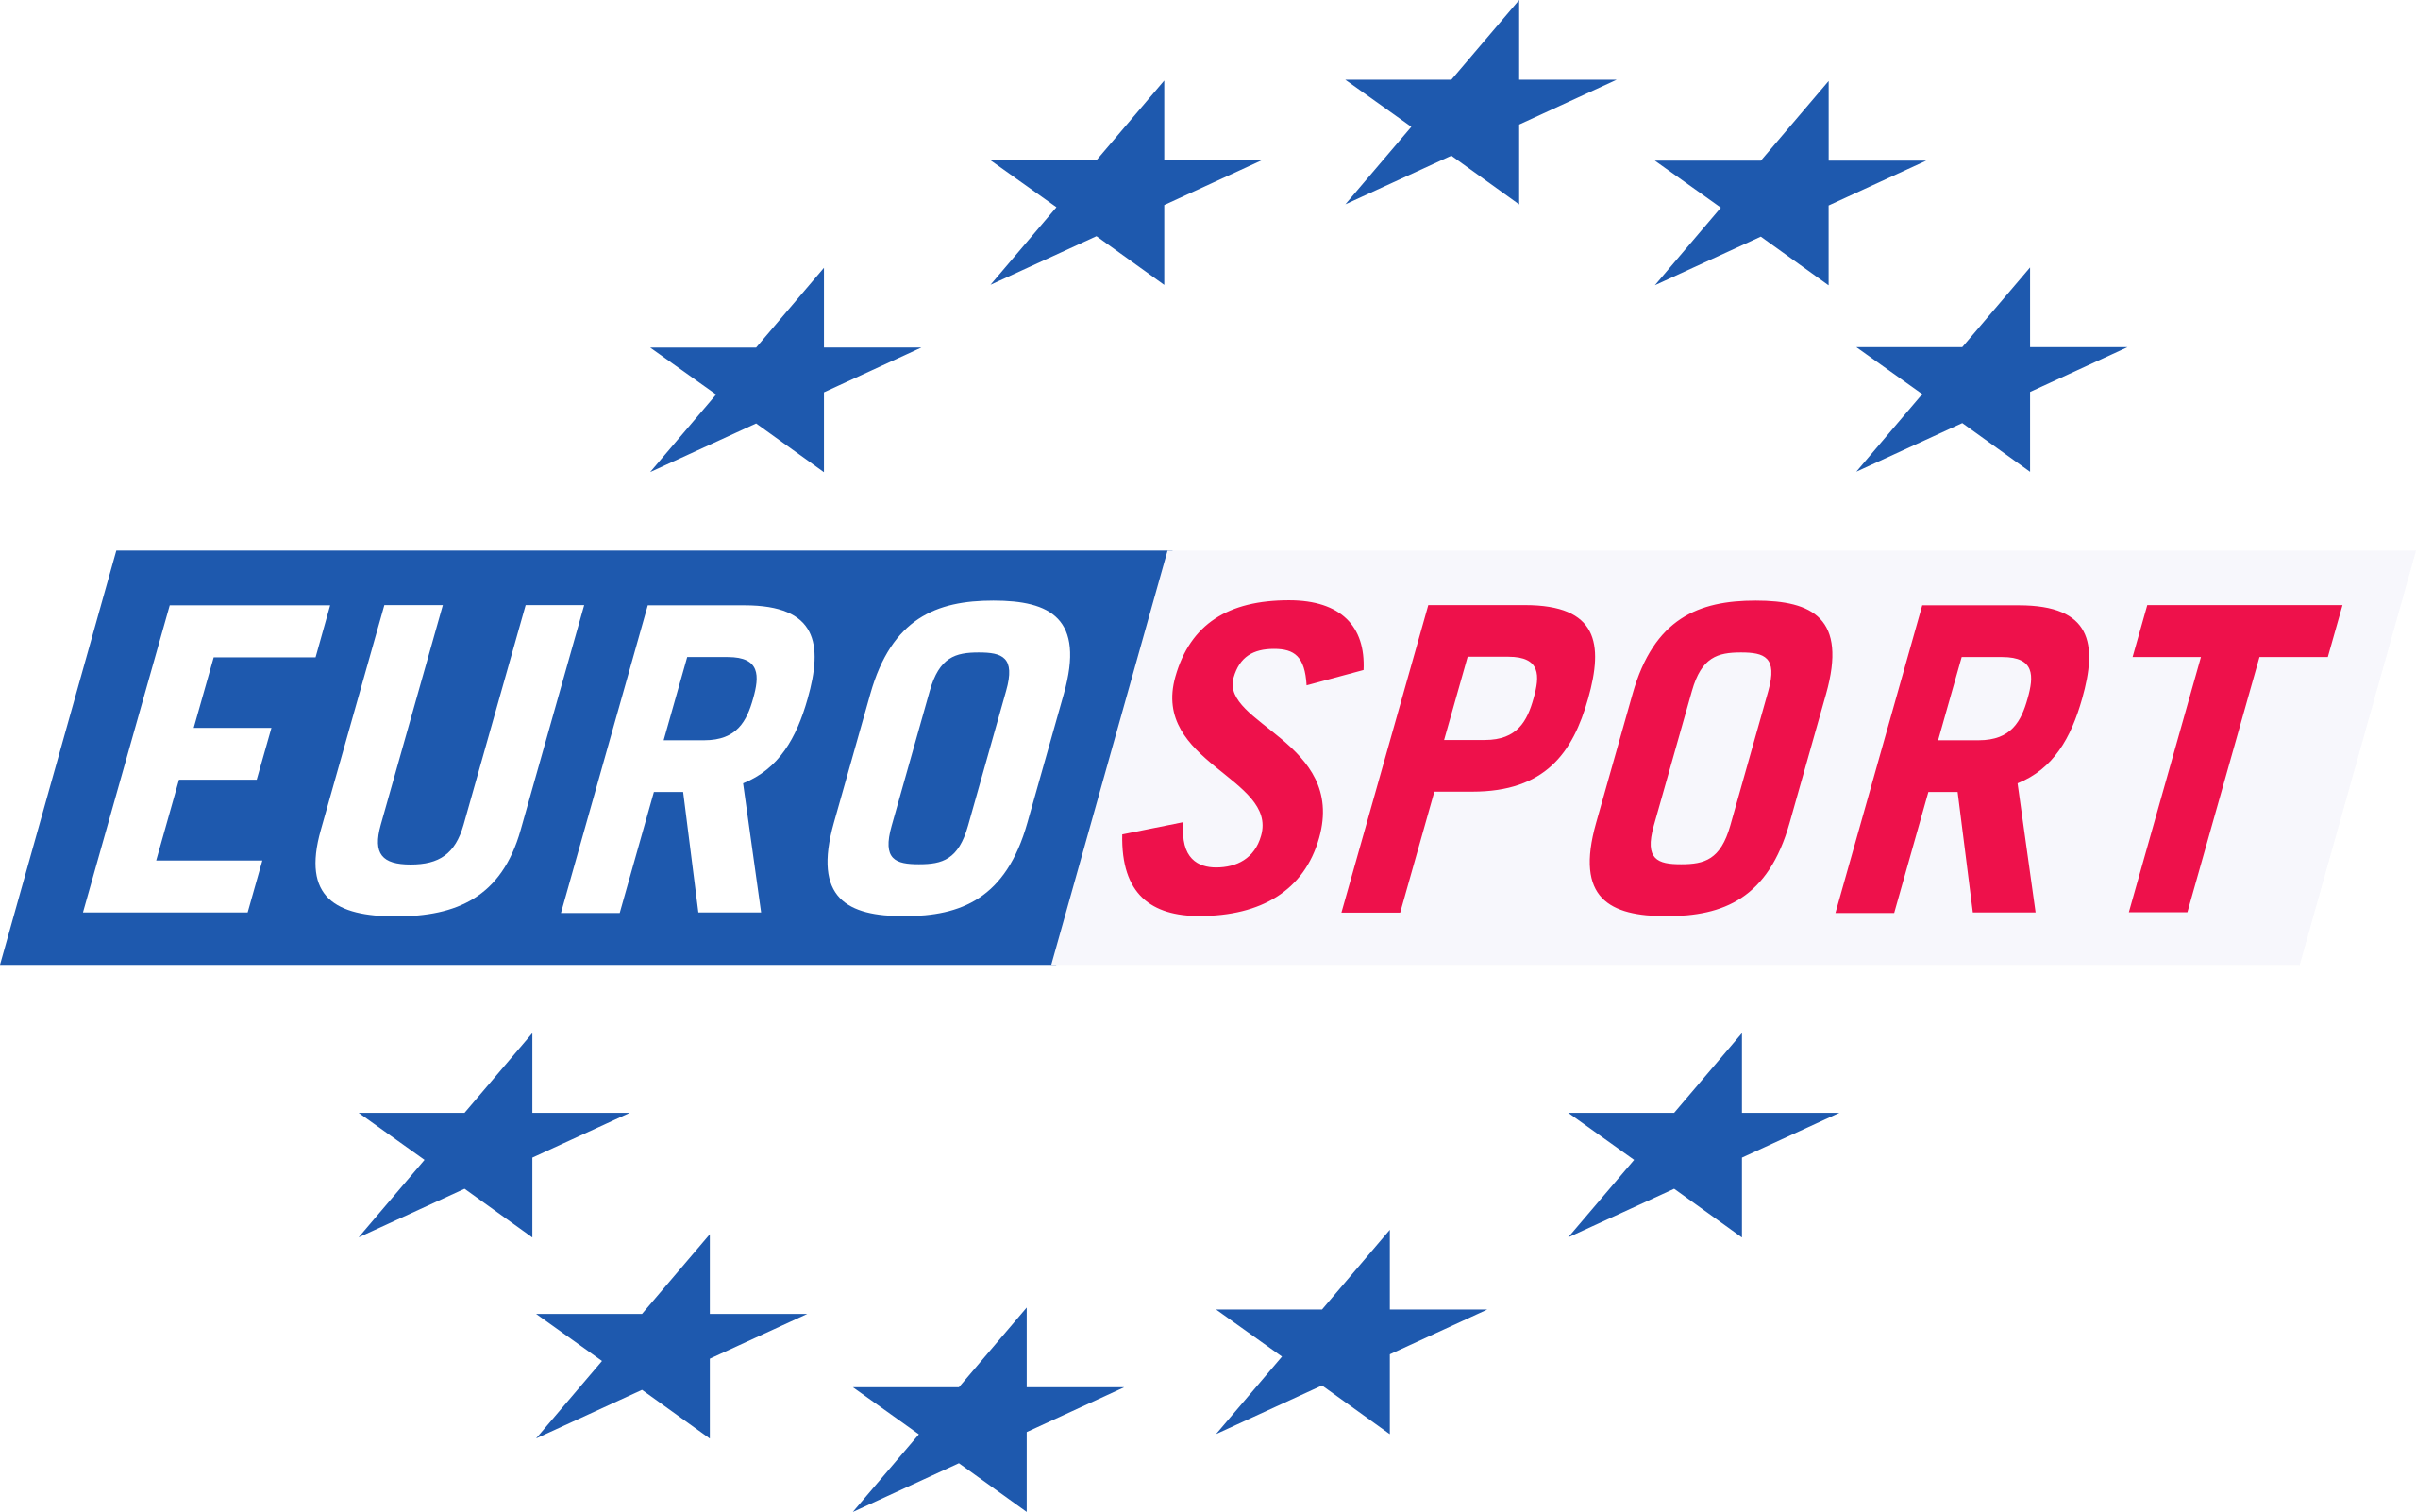 Το Eurosport και το BT Sport θα εξαφανιστούν και θα μετονομαστούν σε TNT Sports